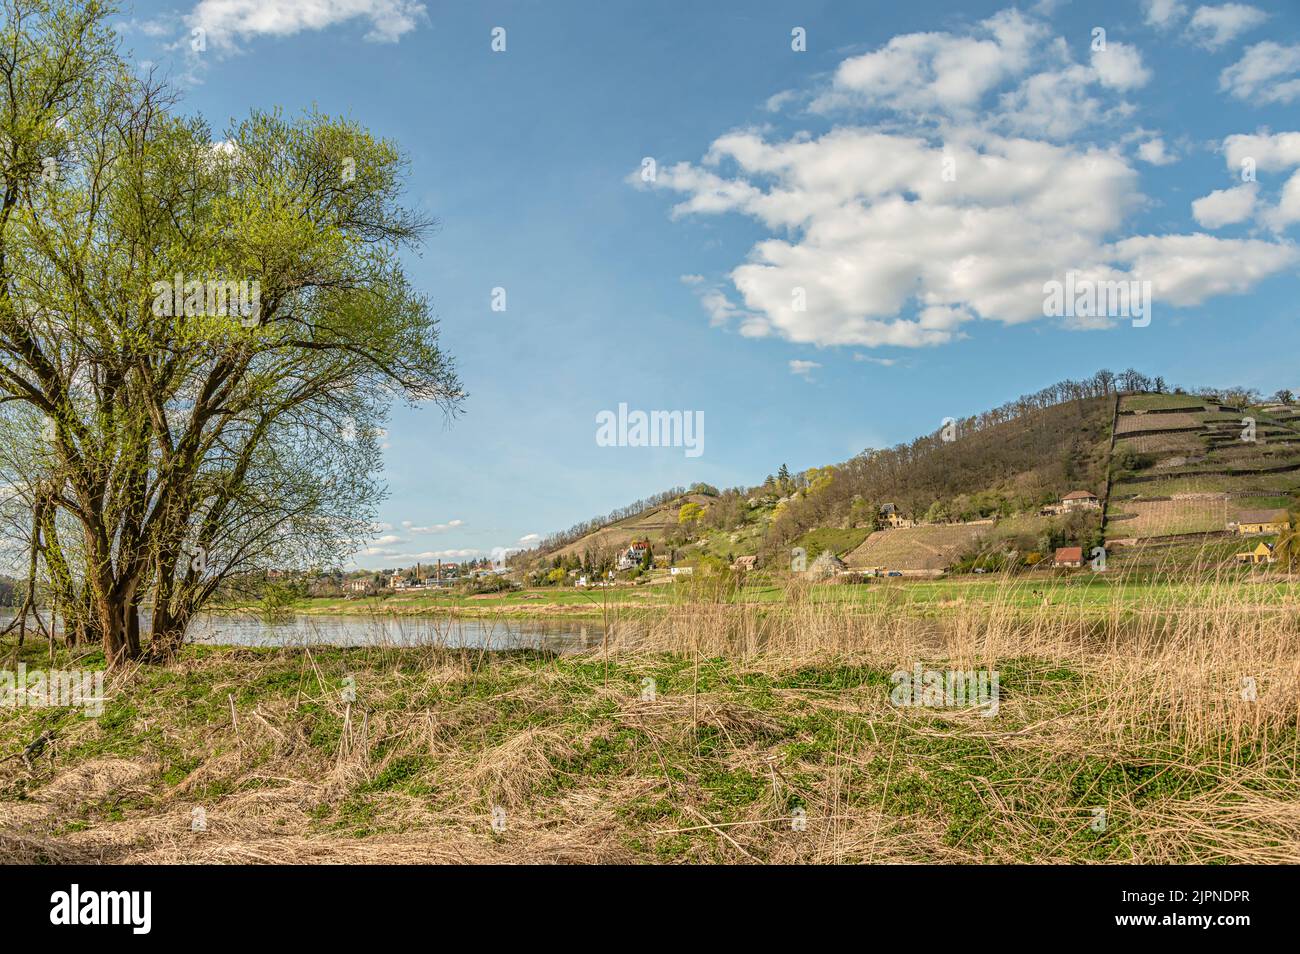 Weinberge im Spaargebirge im Elbtal bei Meißen, Sachsen, Deutschland Stockfoto